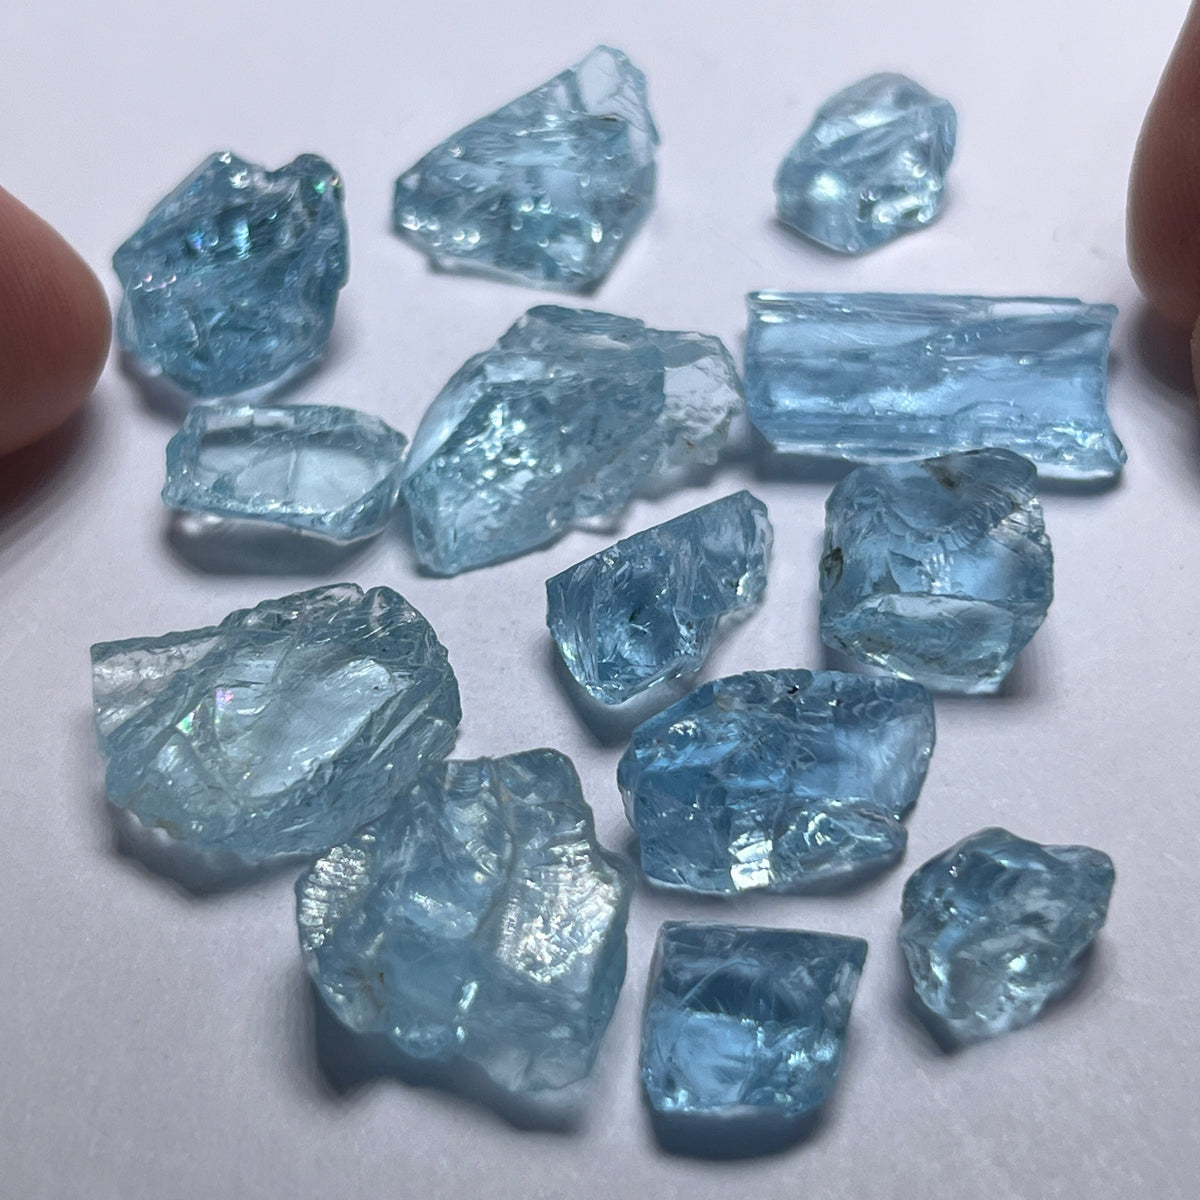 Aquamarine - Stones with Inclusions